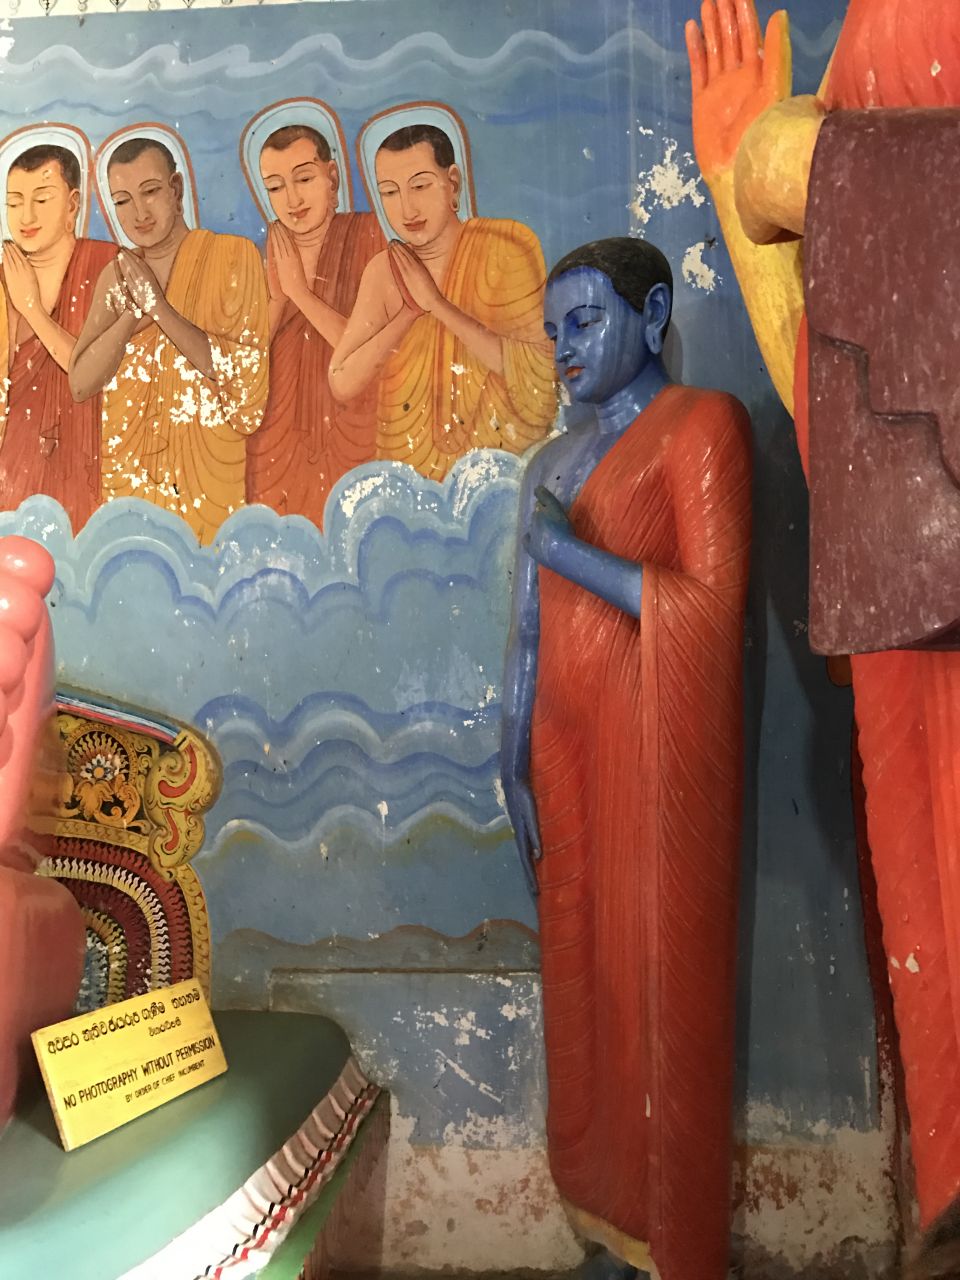 все монахи изображены, с нормальным обычным цветом кожи, а один  вот такой, кто бы это мог быть? - Шри-Ланка 2017. Часть 2.